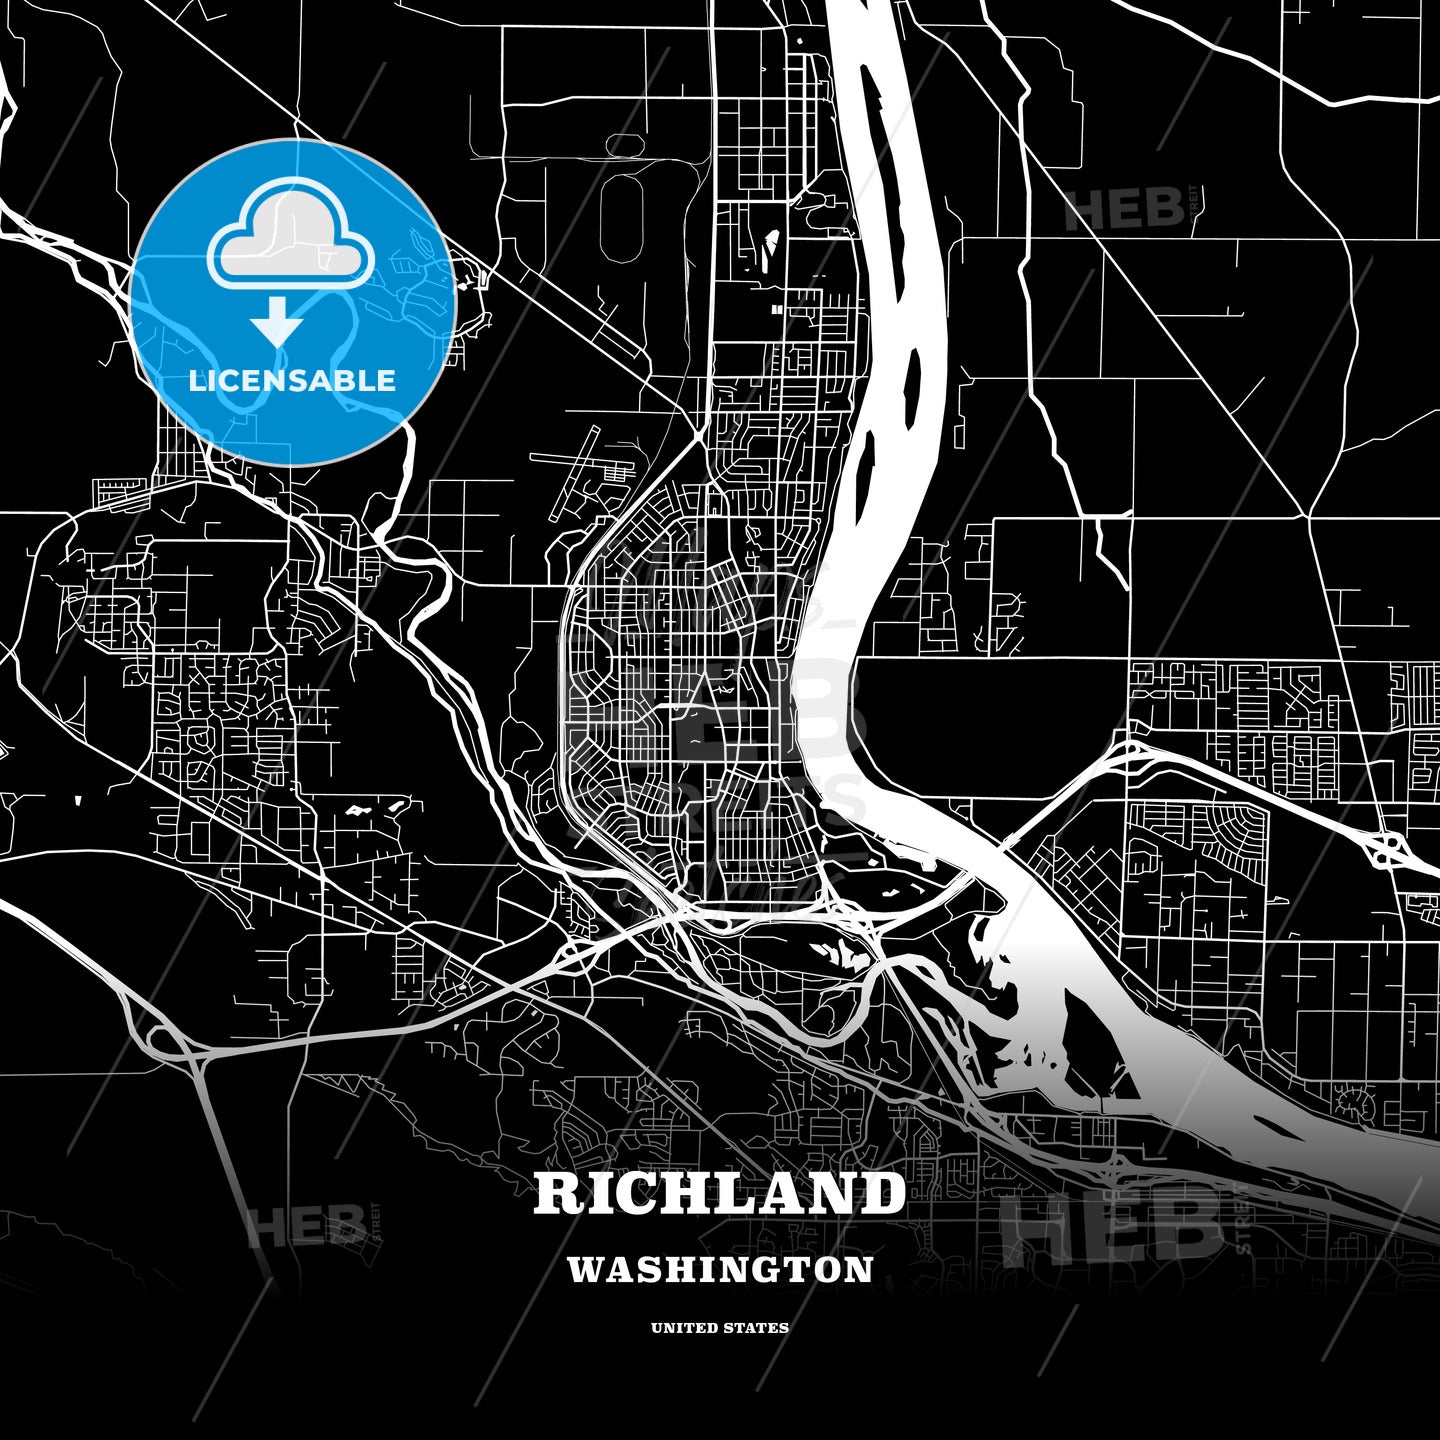 Richland, Washington, USA map